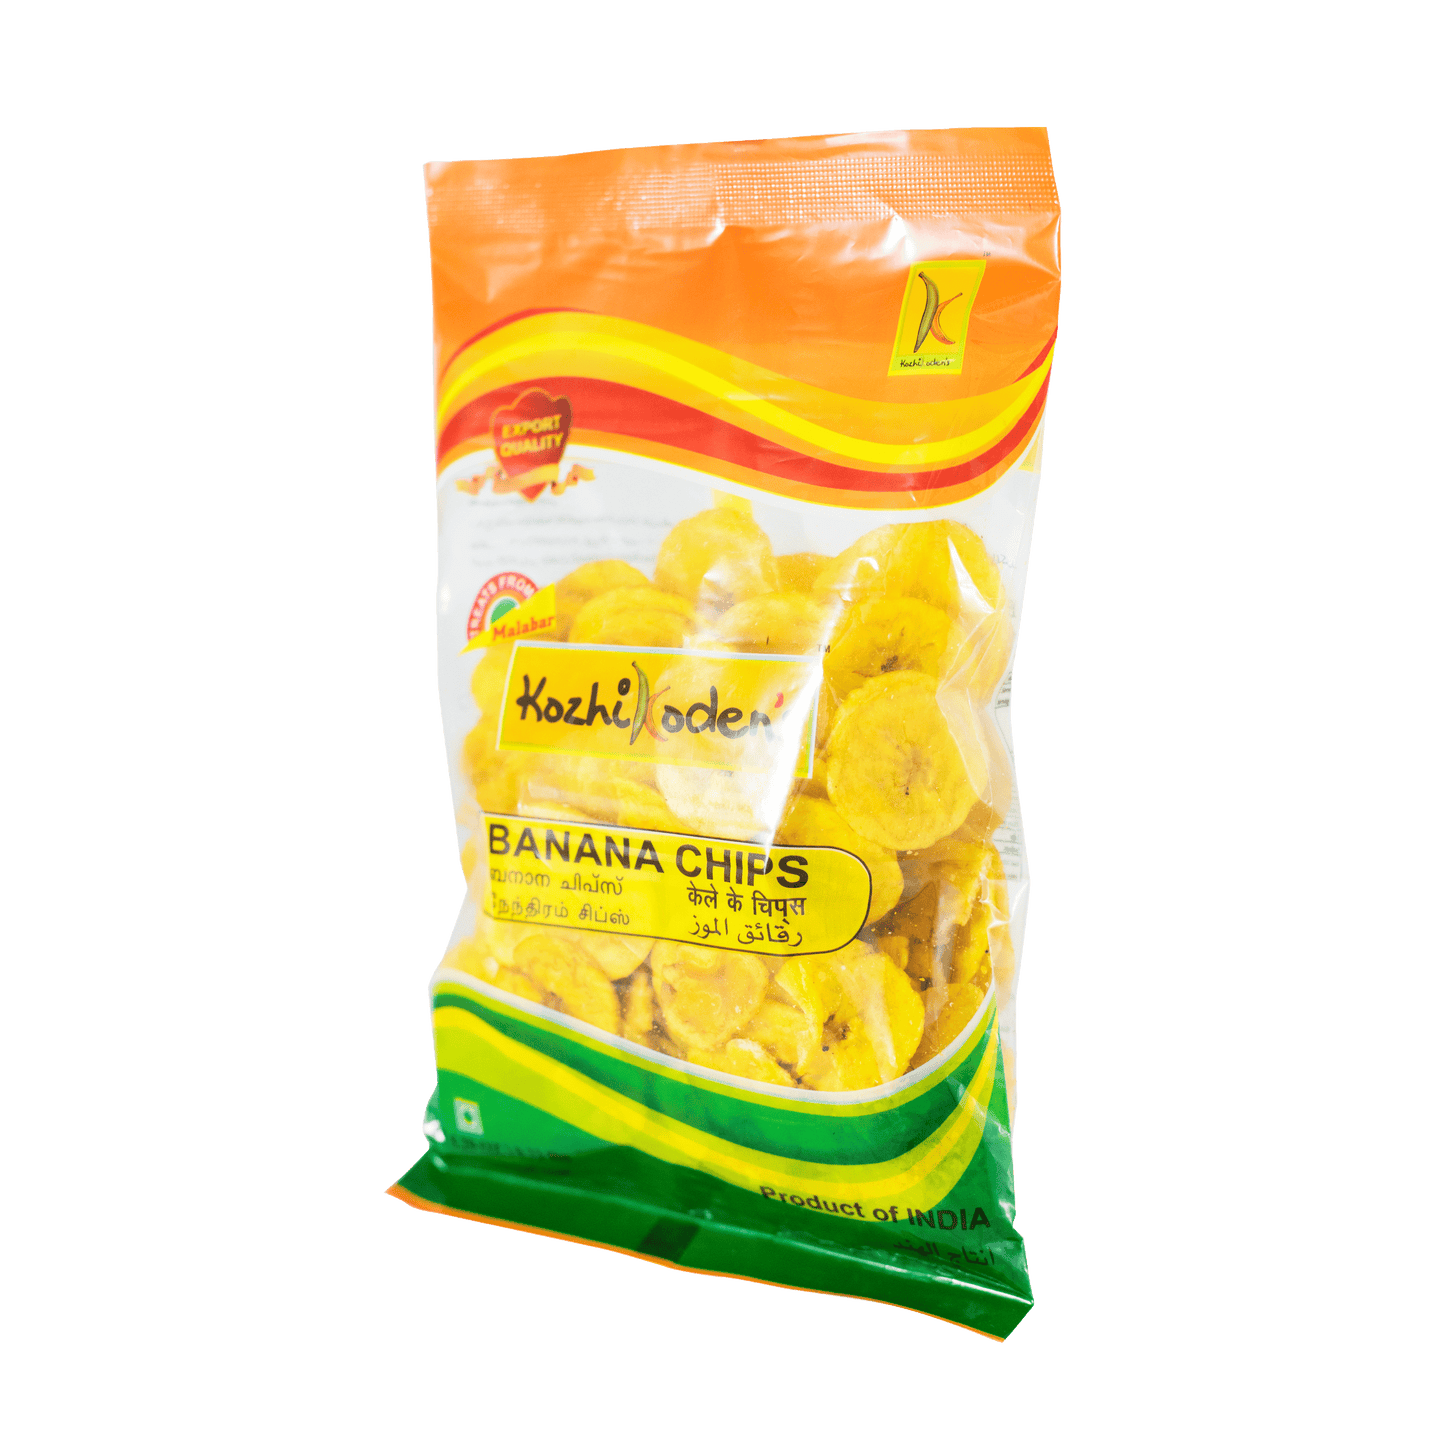 Kozhikoden Banana Chips 150g